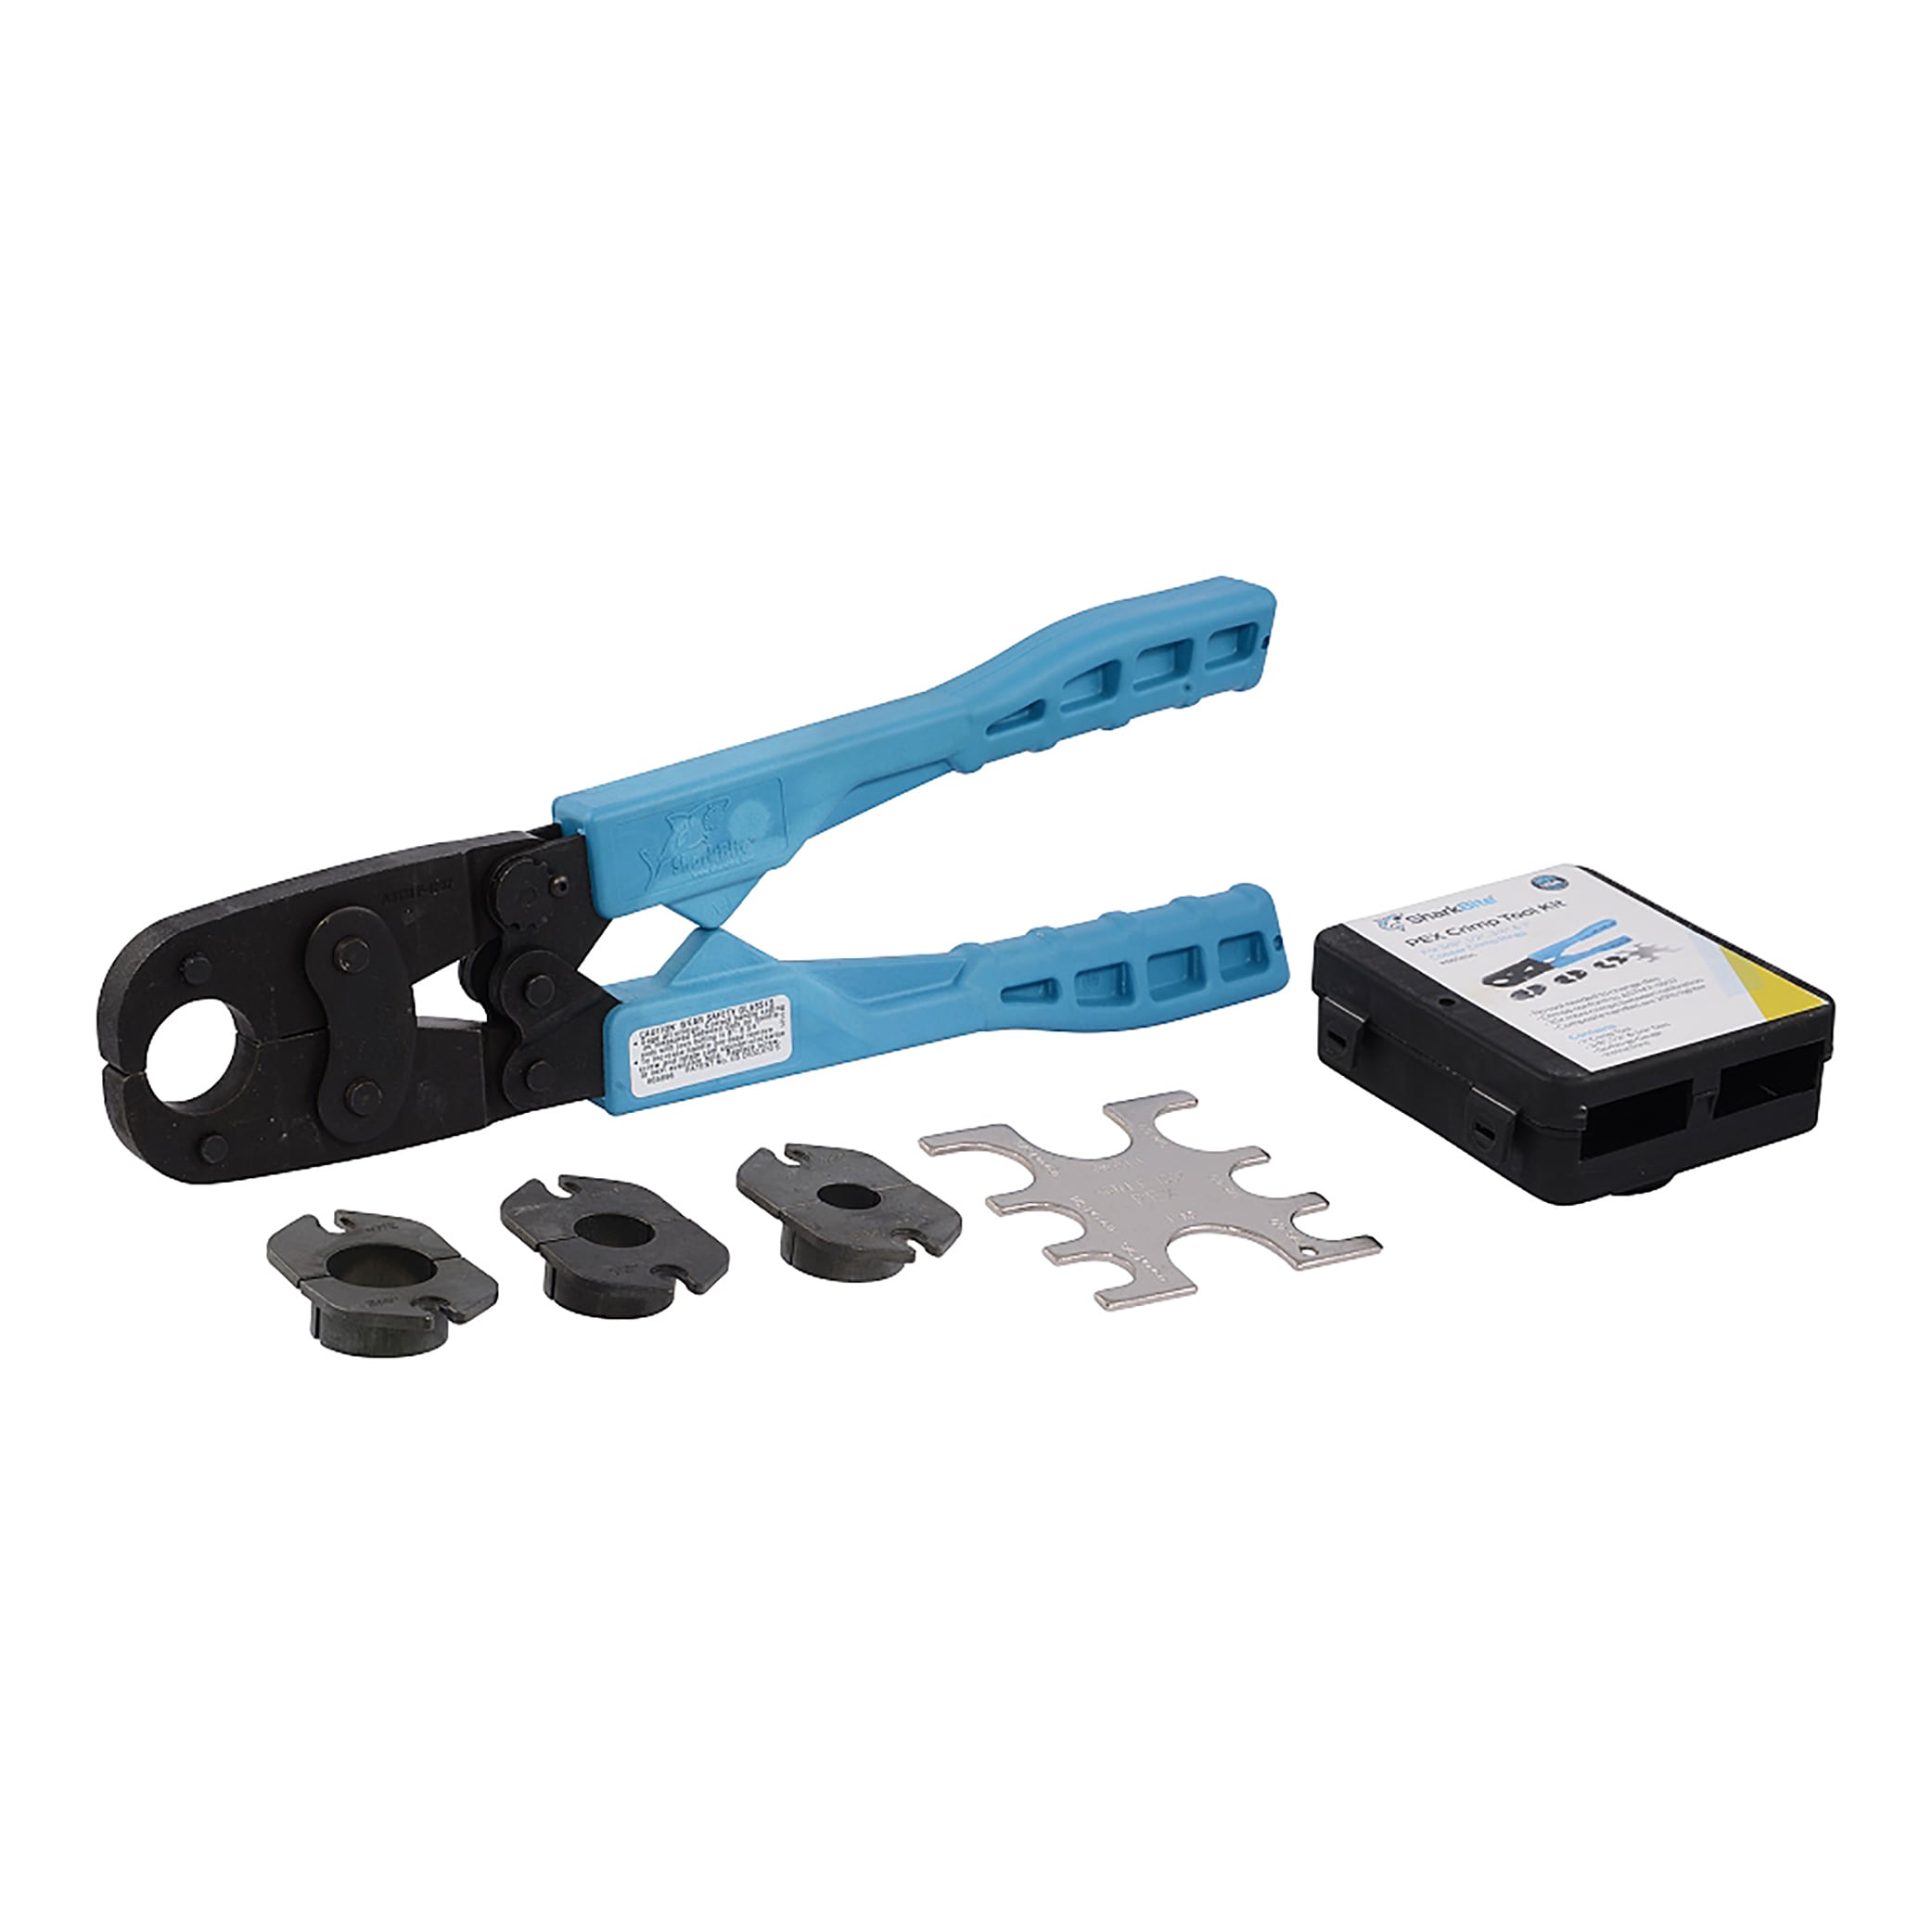 Universal Cutting Machine Mat, Equipment & Tools